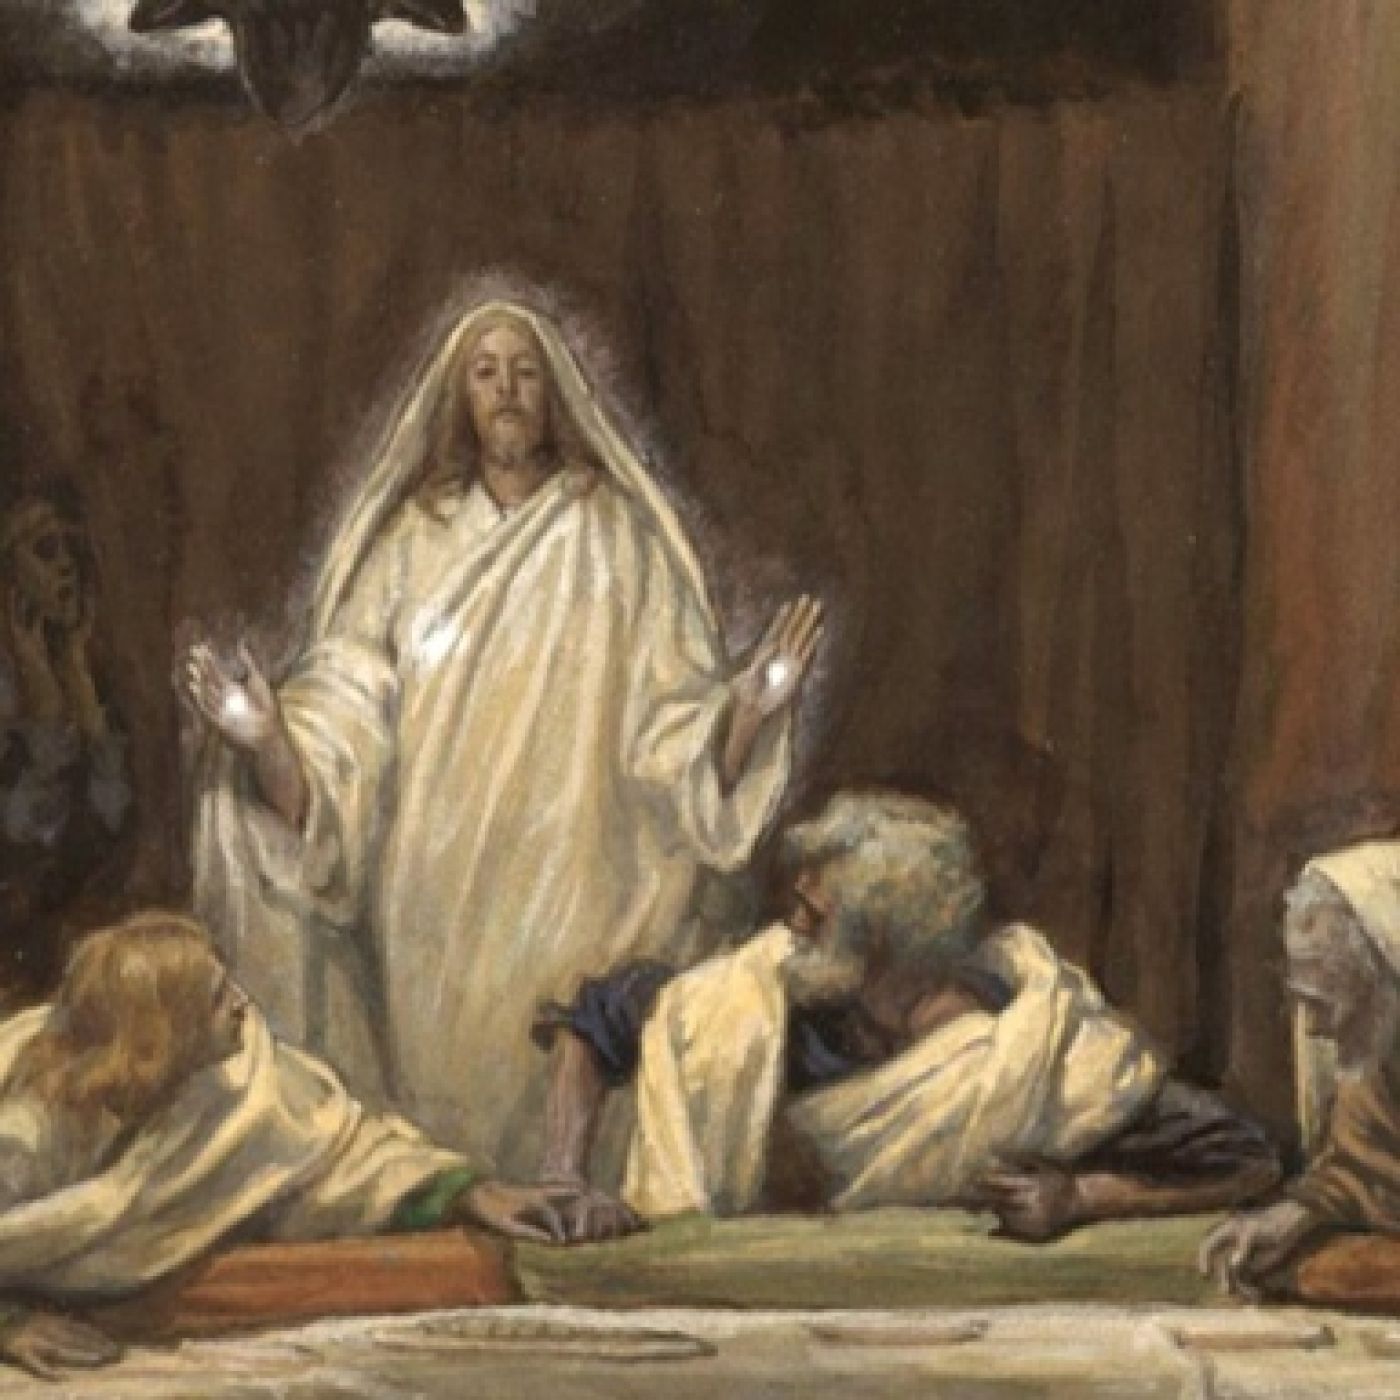 Aparición de Jesús a los Apóstoles